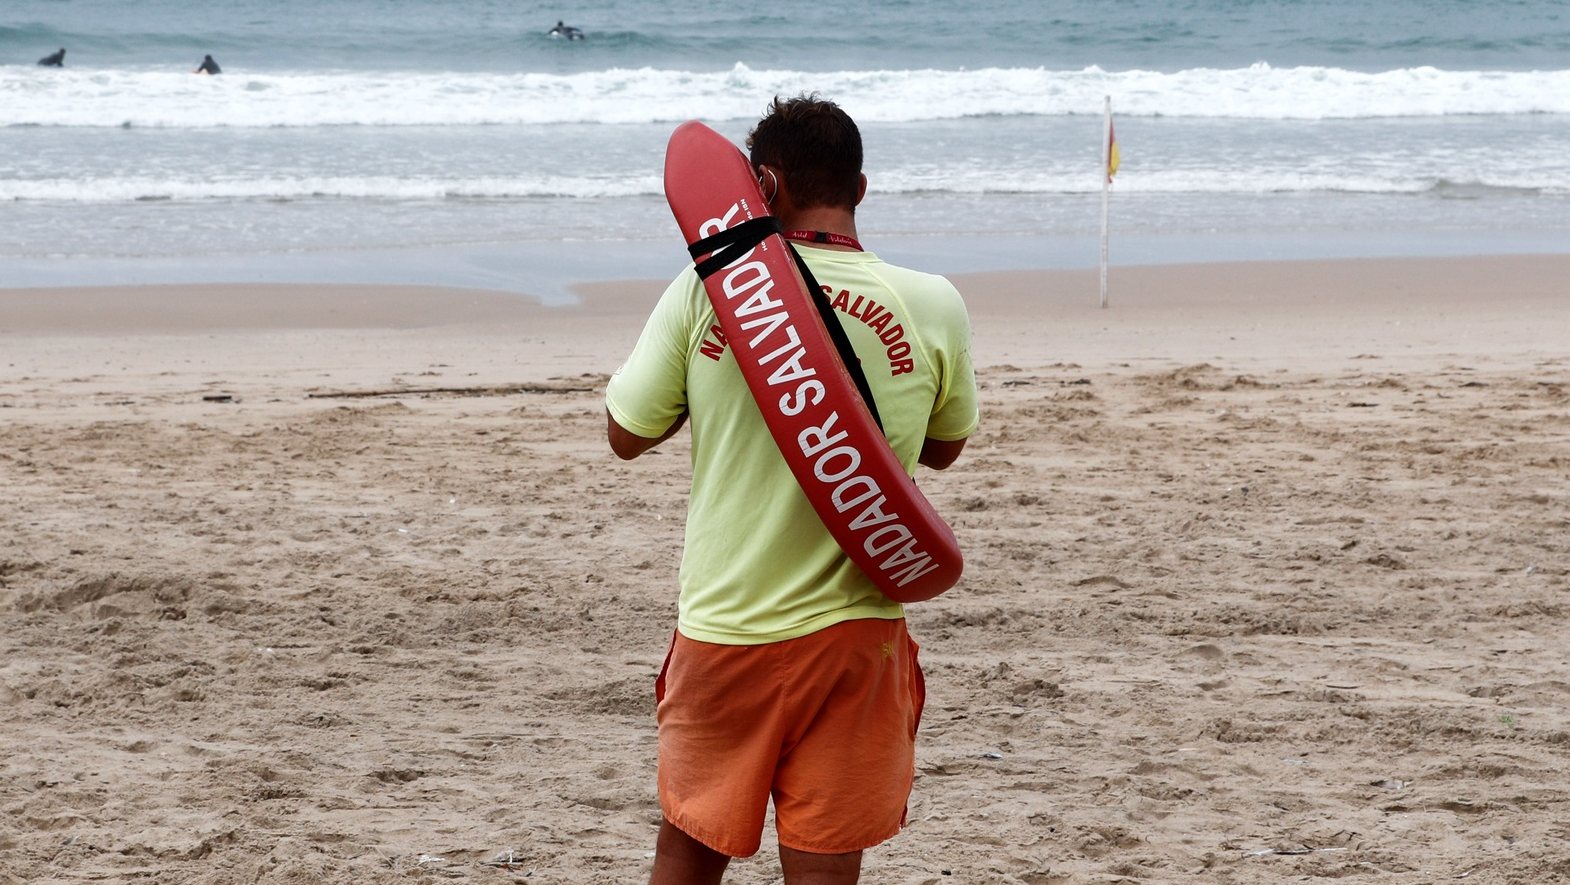 Um nadador salvador assiste à formação nas áreas do resgate e salvamento aquático e Suporte Básico de Vida, numa praia da Costa da Caparica, Almada, 23 de setembro de 2020. ANTÓNIO COTRIM/LUSA